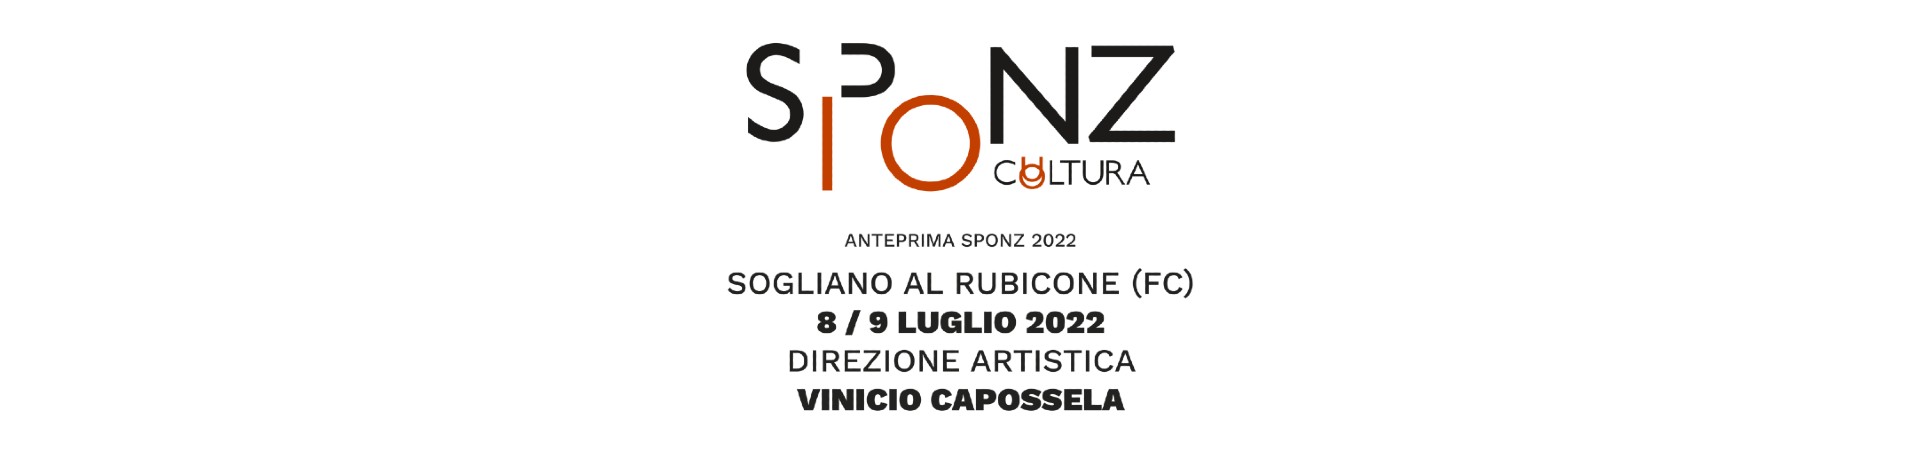 Visit-Sogliano-al-Rubicone-Eventi-anteprimasponzfest2022-banner1920